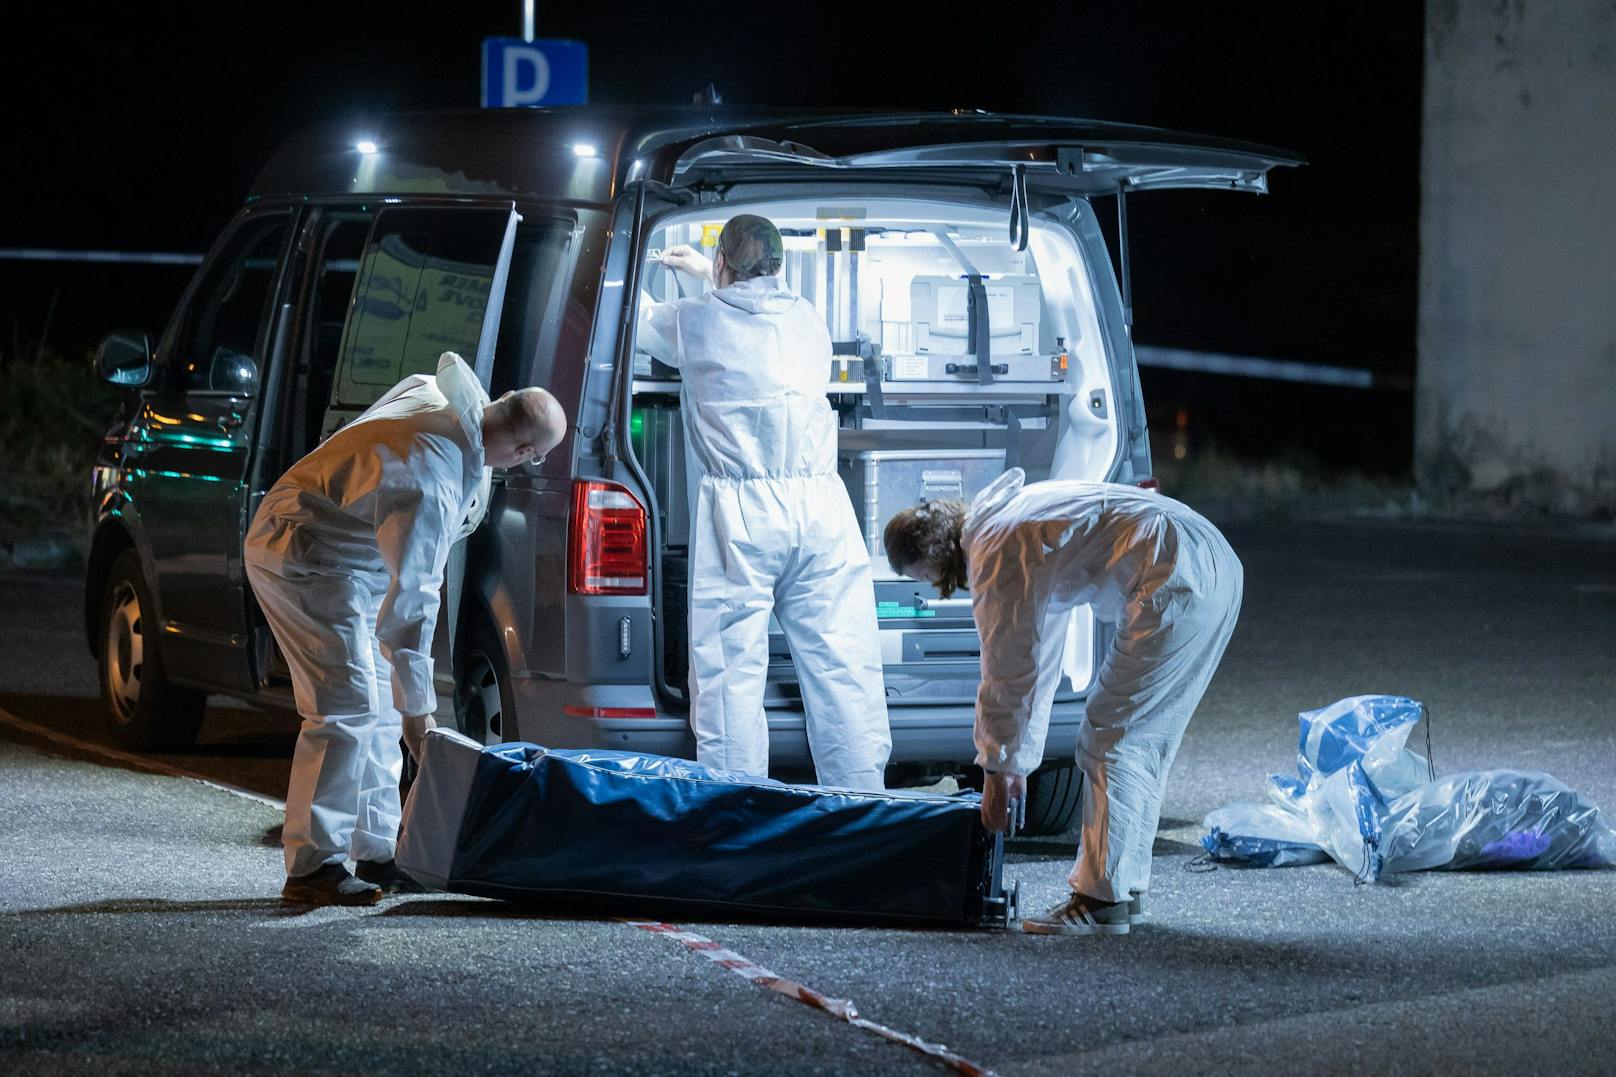 In Ansfelden bei Linz fand die Polizei am Sonntag in einem Kofferraum eine Leiche